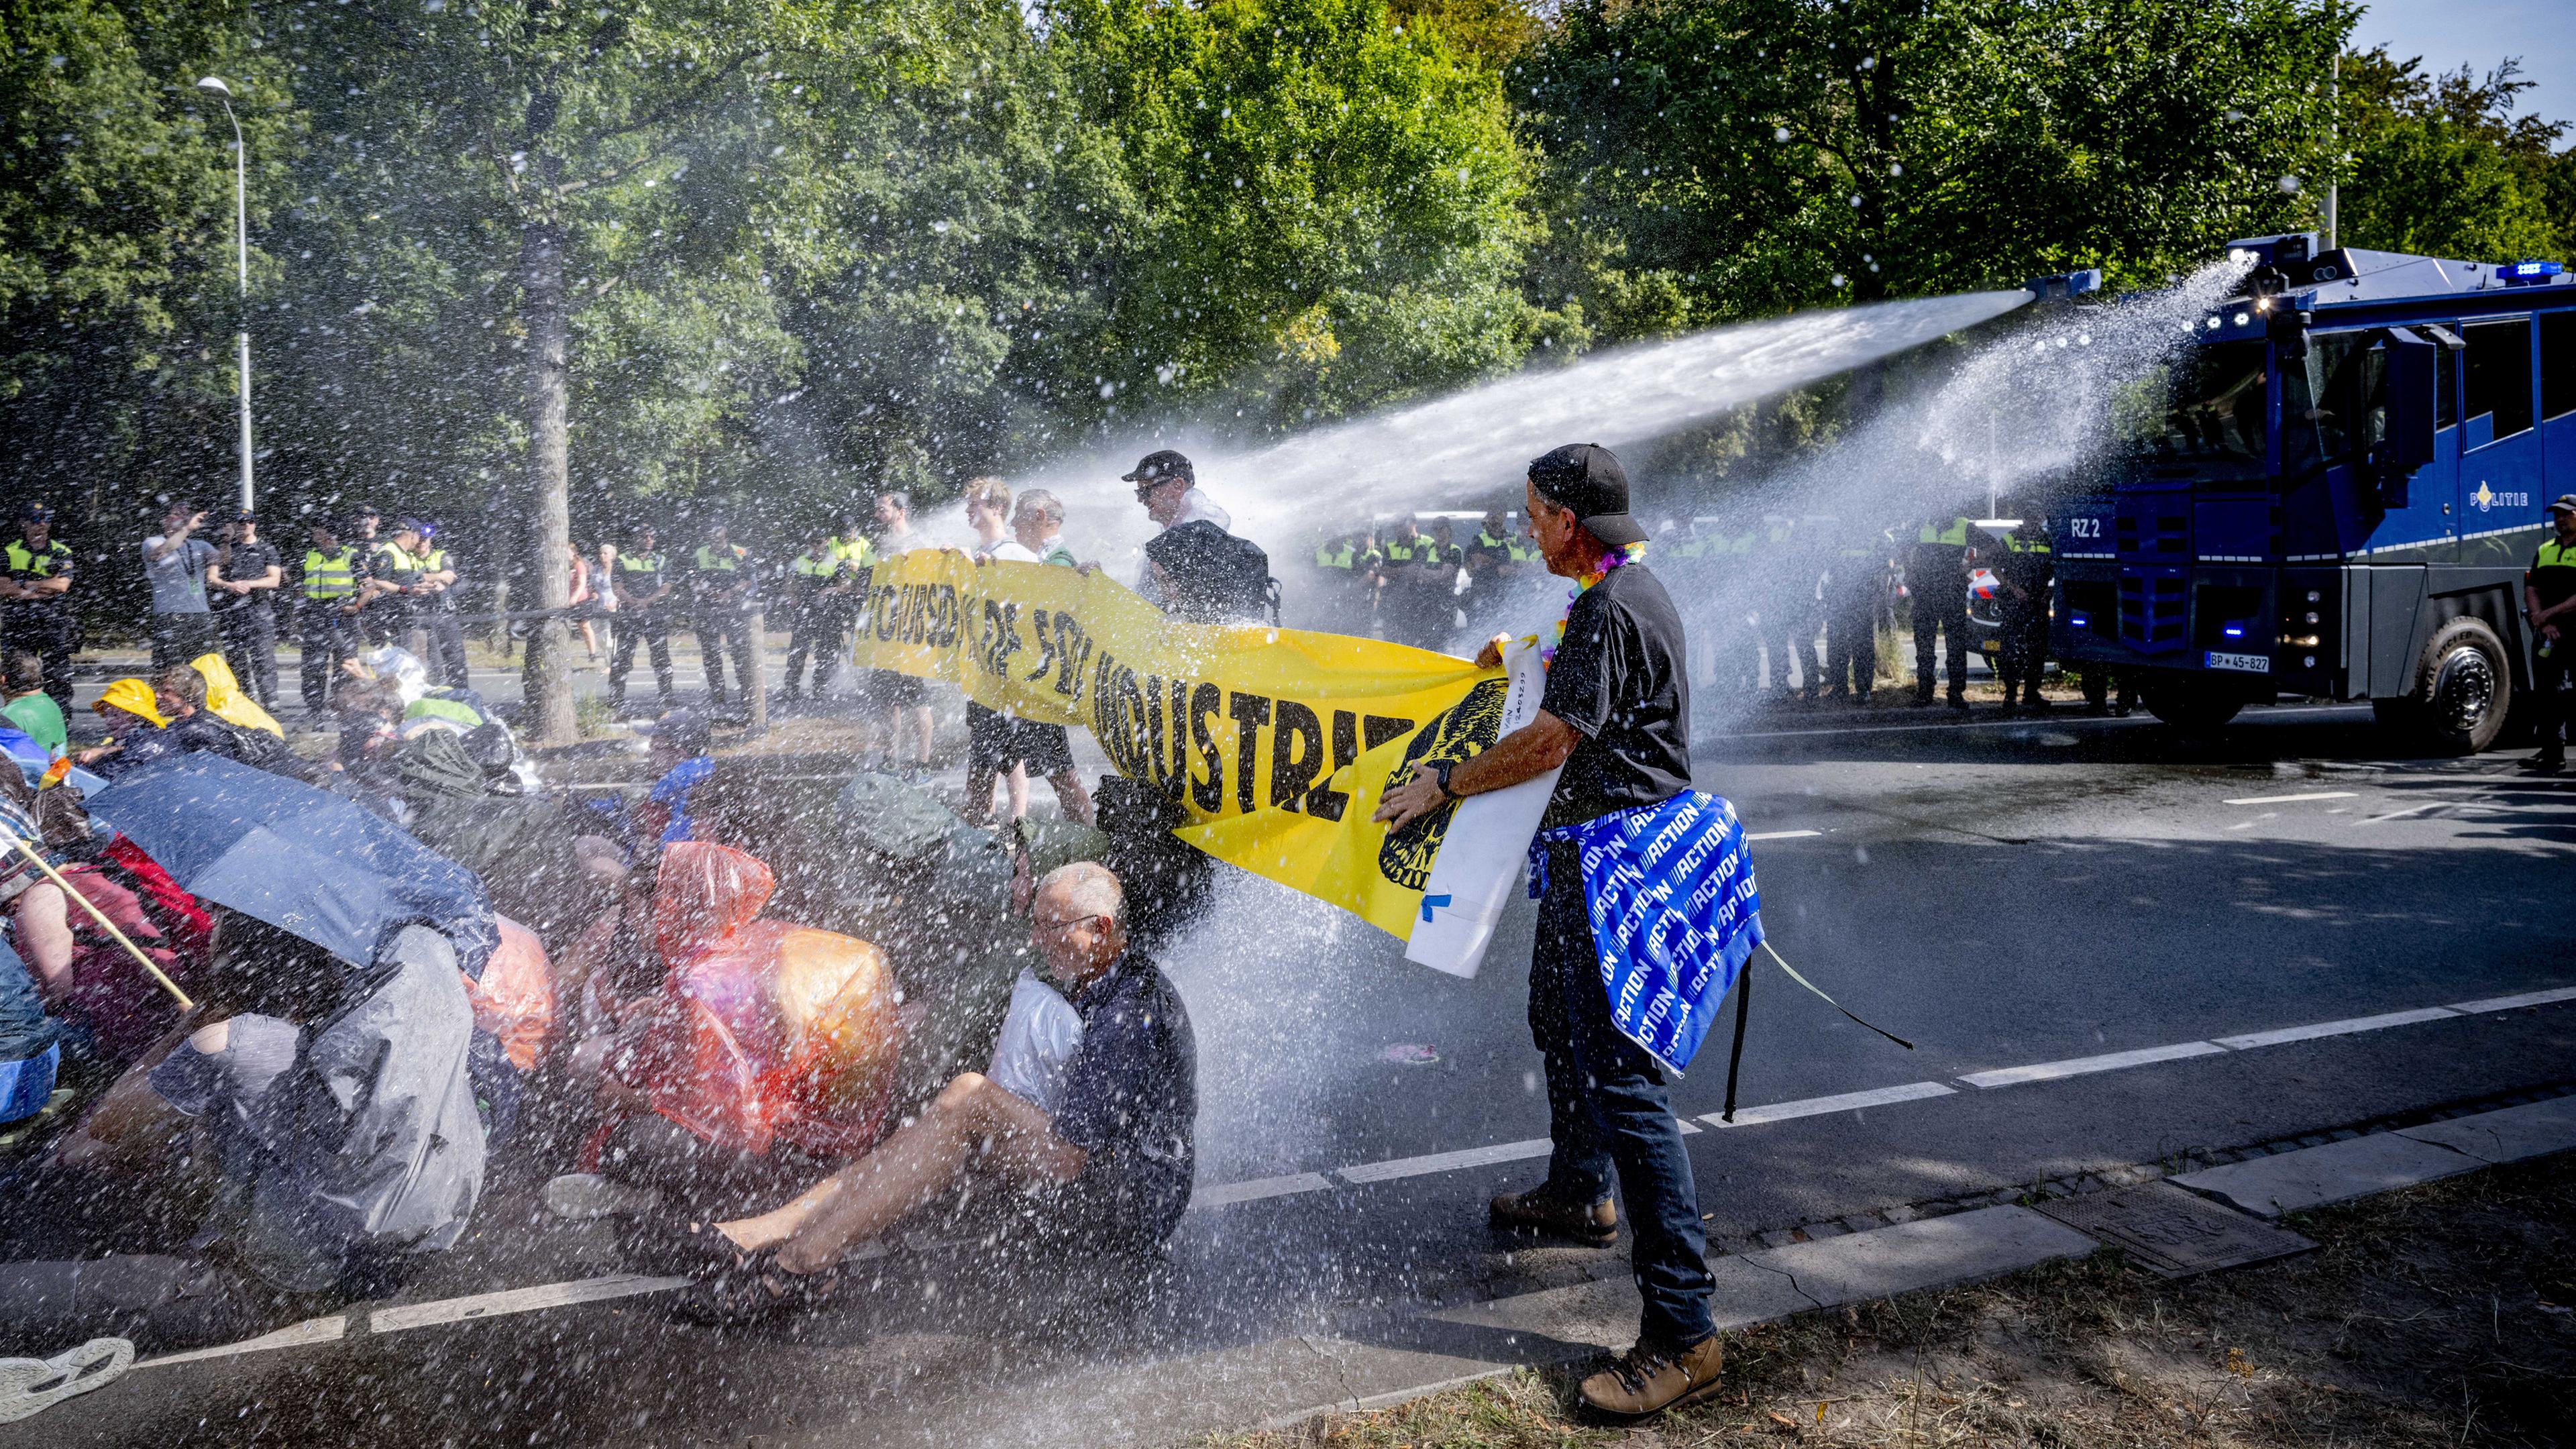 Niederlande, Den Haag: Polizisten setzten Wasserwerfer gegen Klimaaktivisten, die eine Straße blockieren, ein.